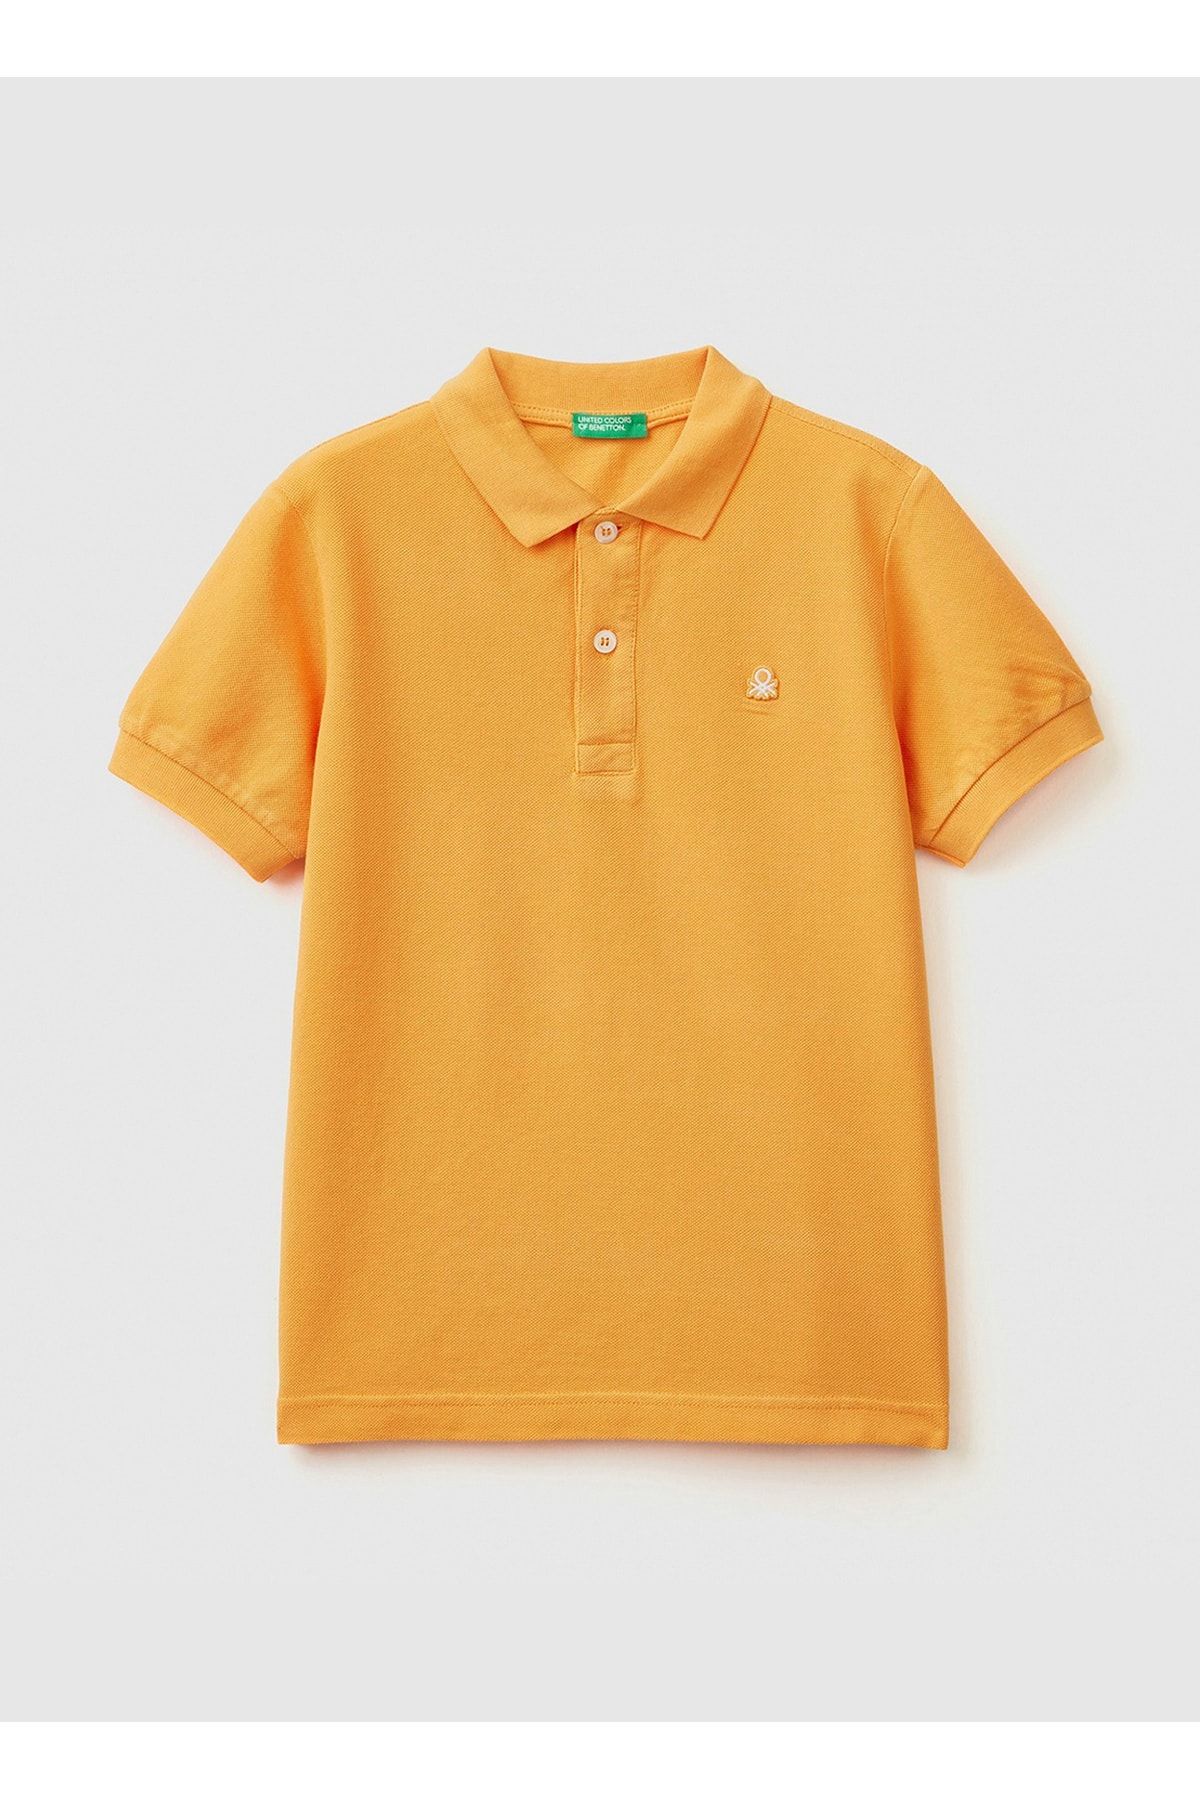 Benetton Düz Sarı Erkek Çocuk Polo T-Shirt 3089C300Q